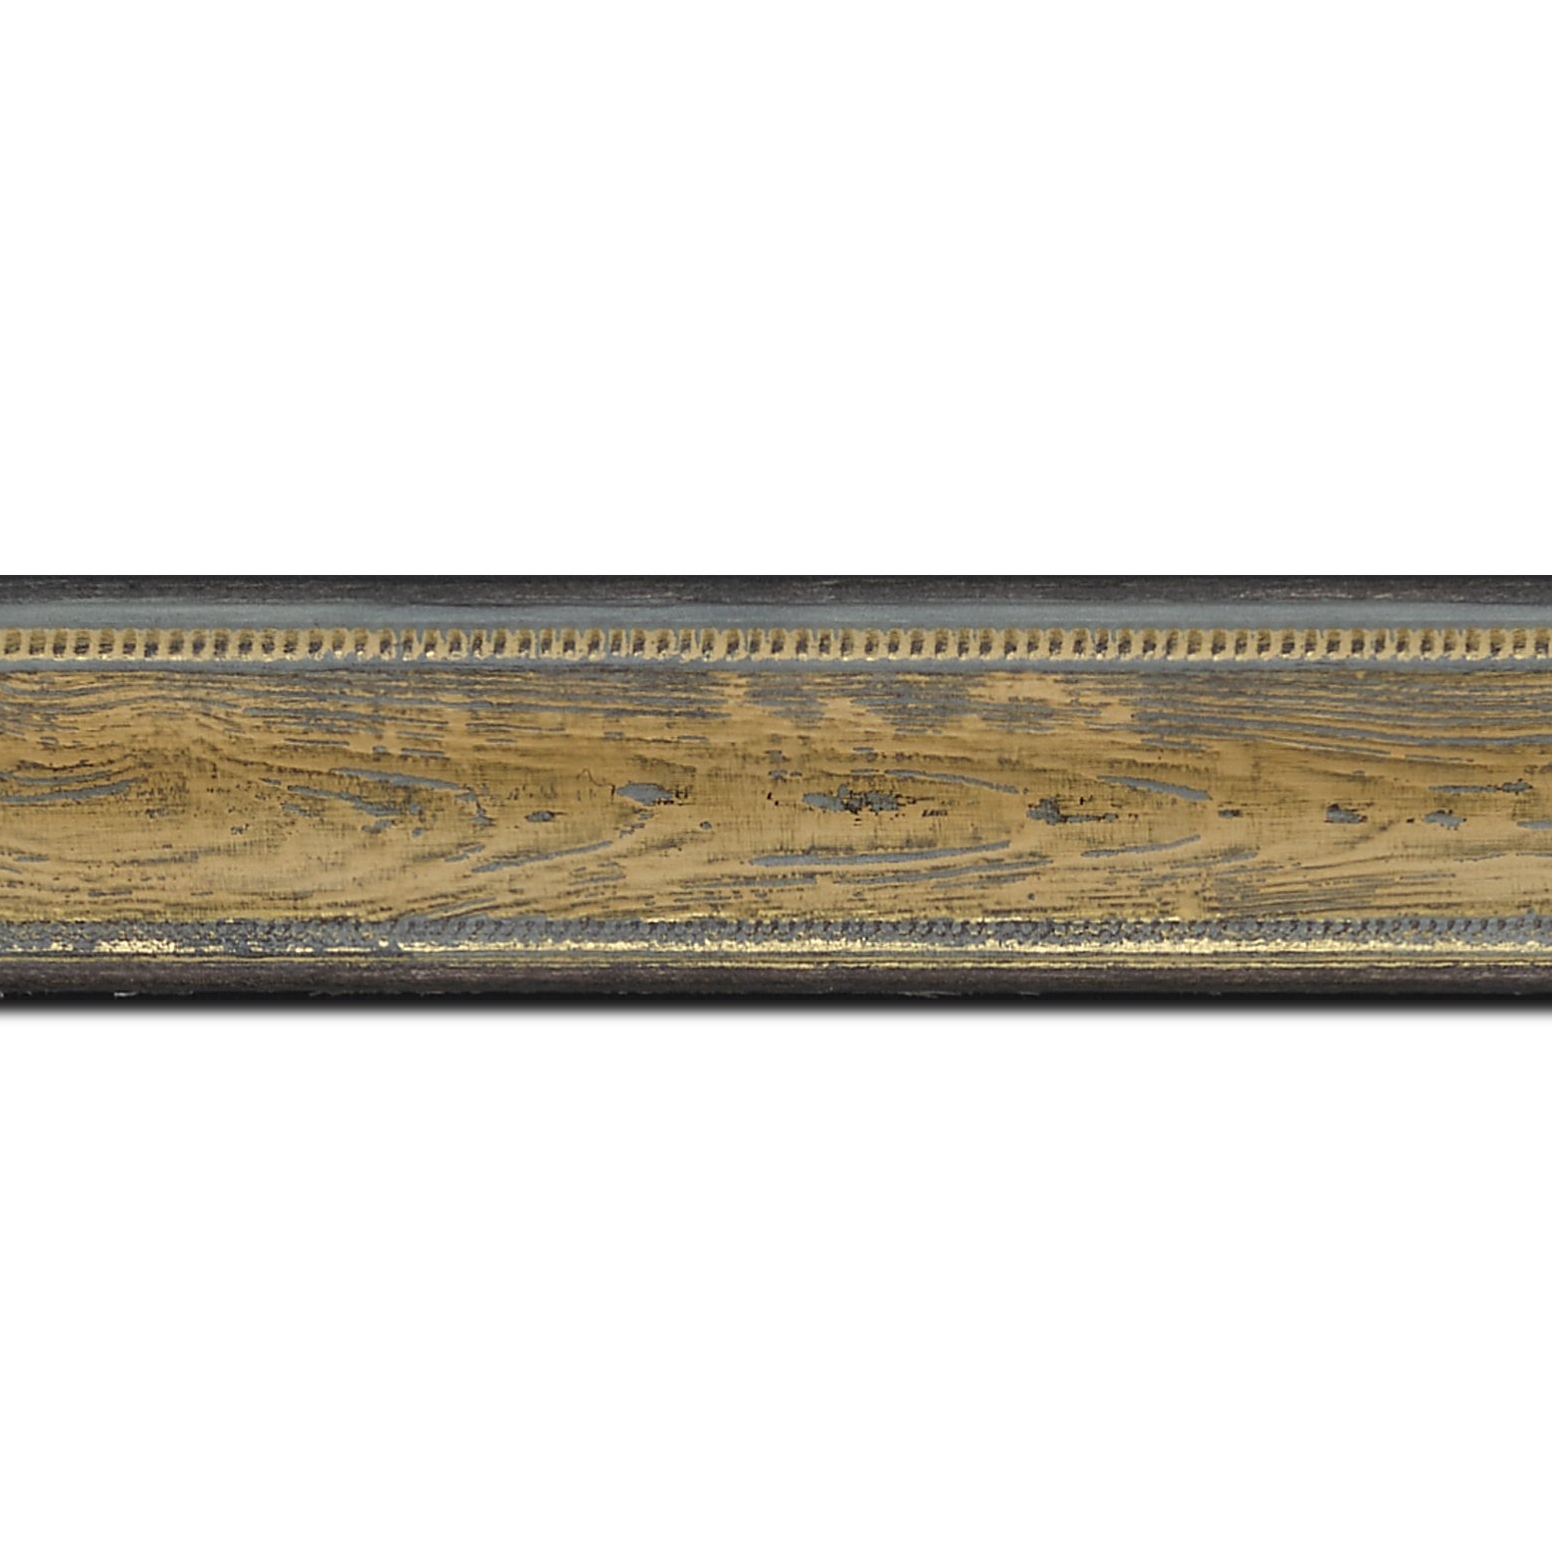 Baguette longueur 1.40m bois profil incurvé largeur 4.1cm couleur vert sur naturel aspect veiné liseret or